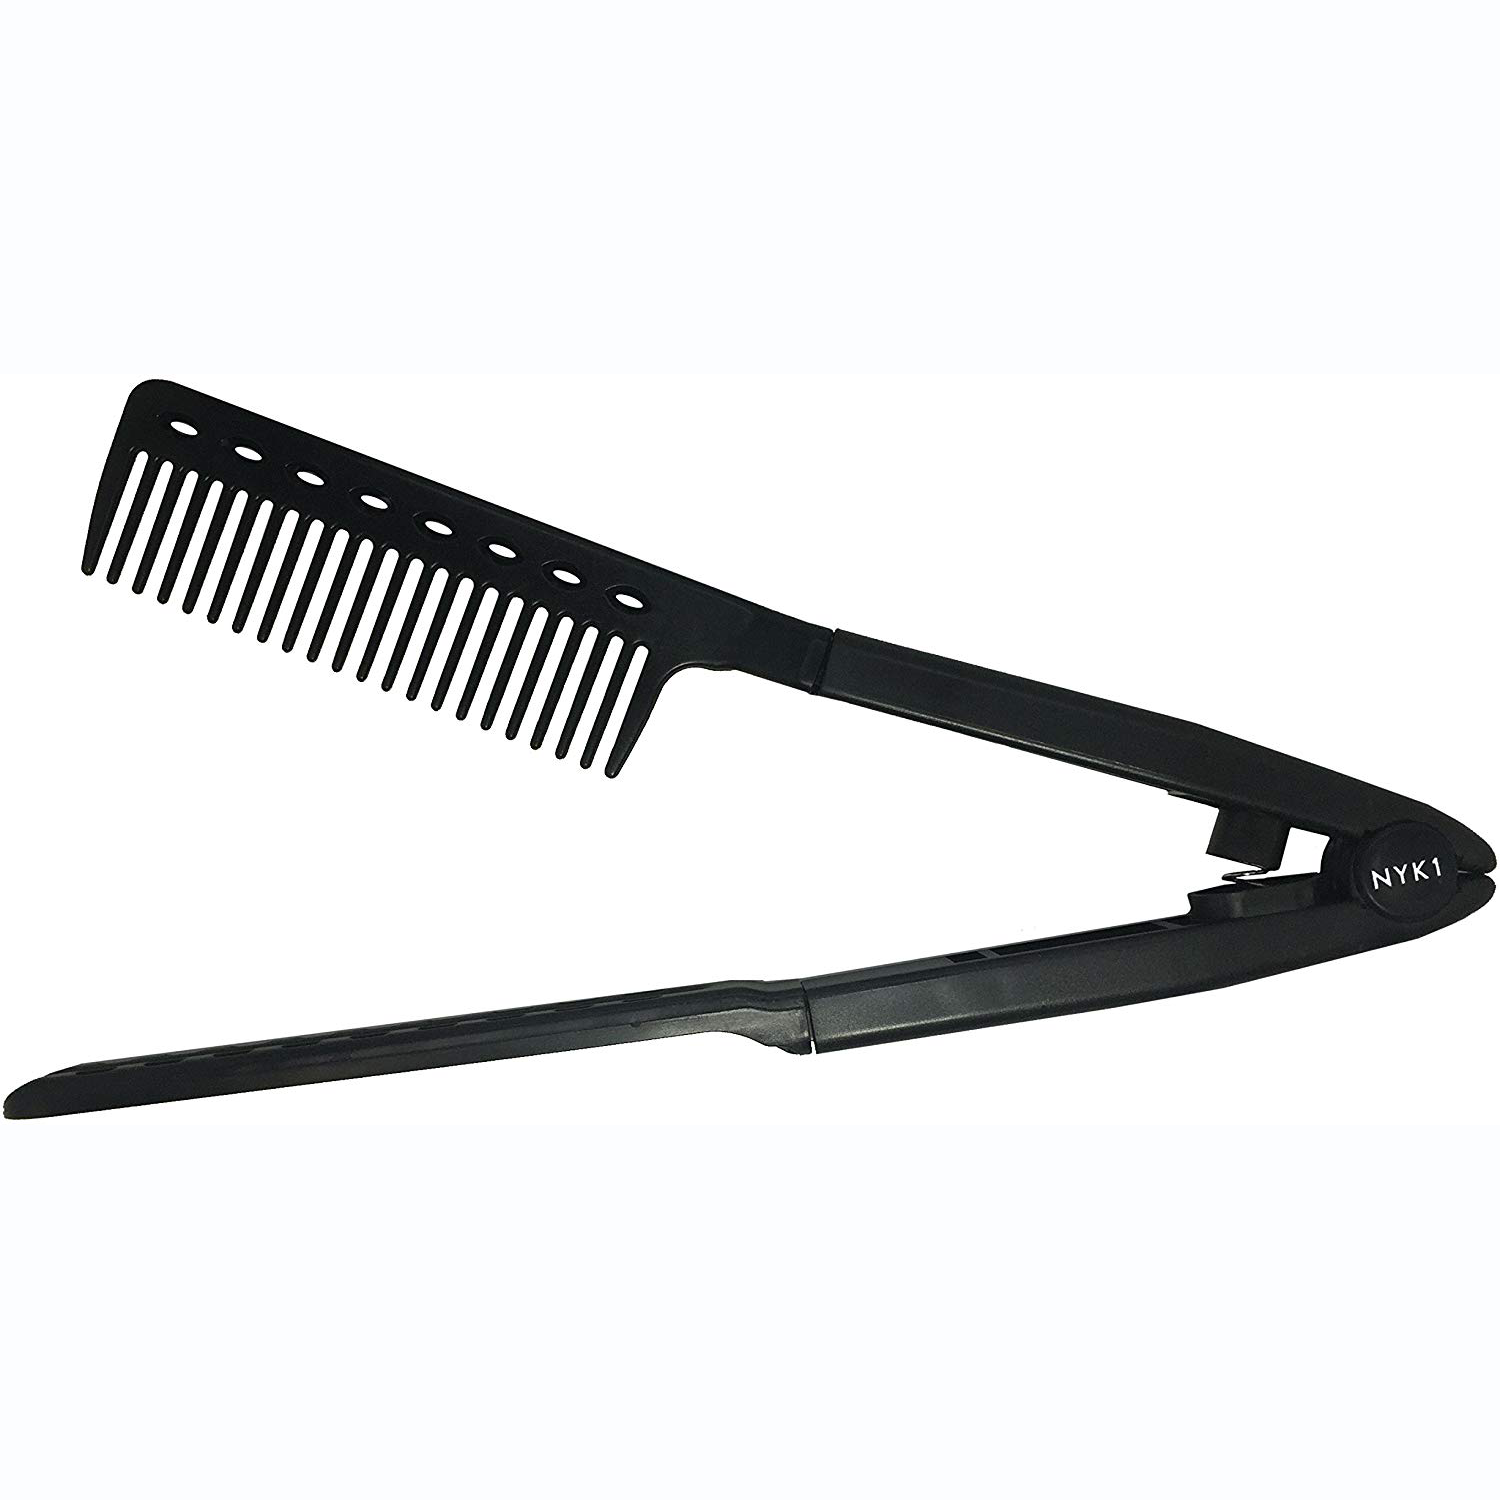 Hair Straightener V Comb | Hair Straightening Detangle Comb | nyk1.com –  NYK1